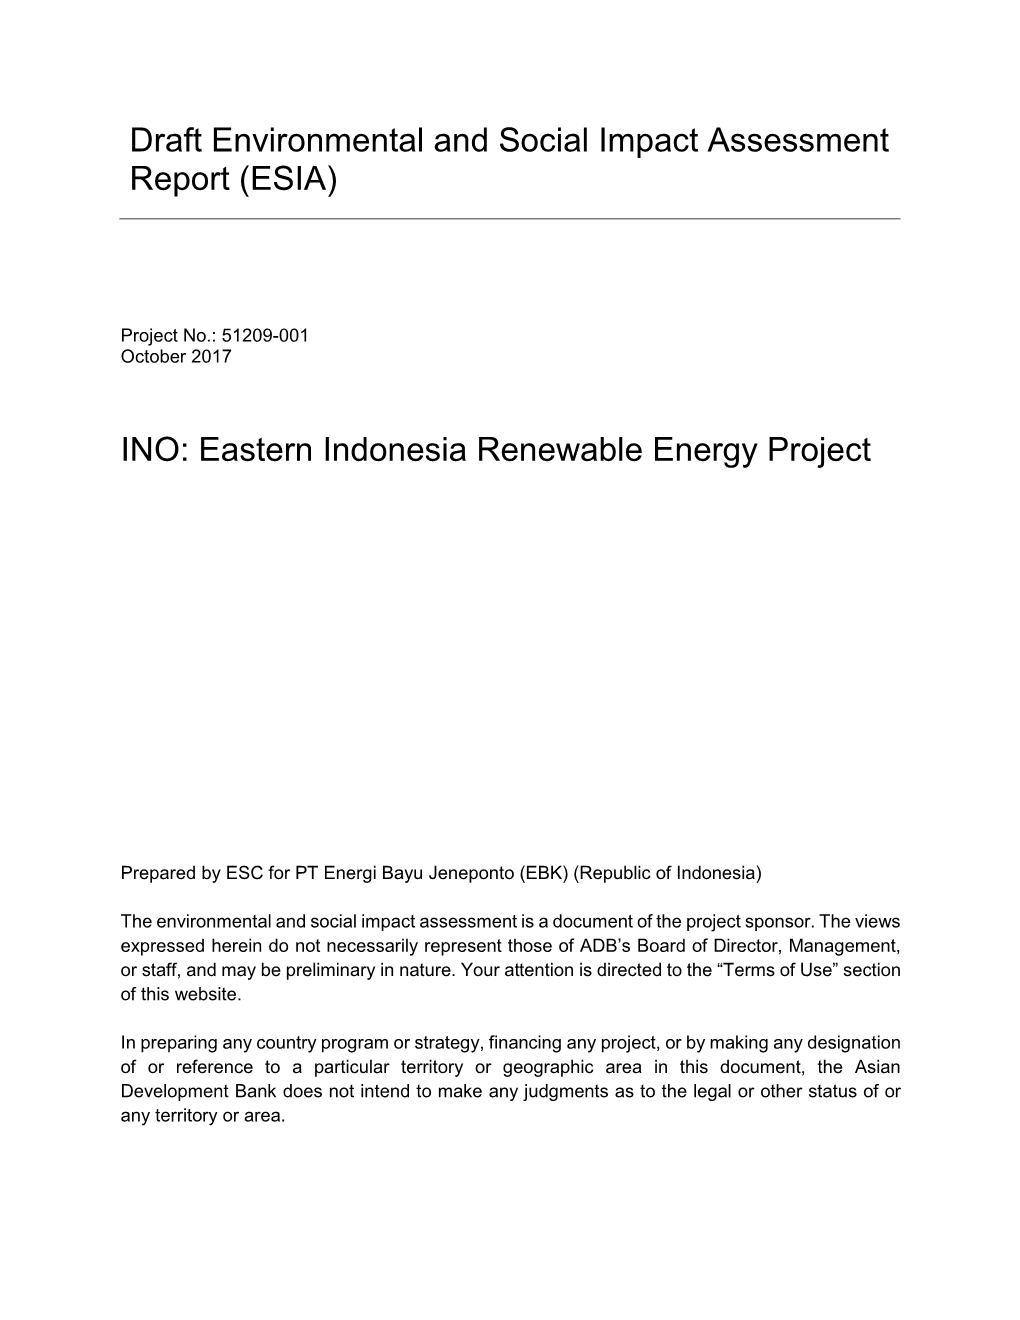 (ESIA) INO: Eastern Indonesia Renewable Energy Project